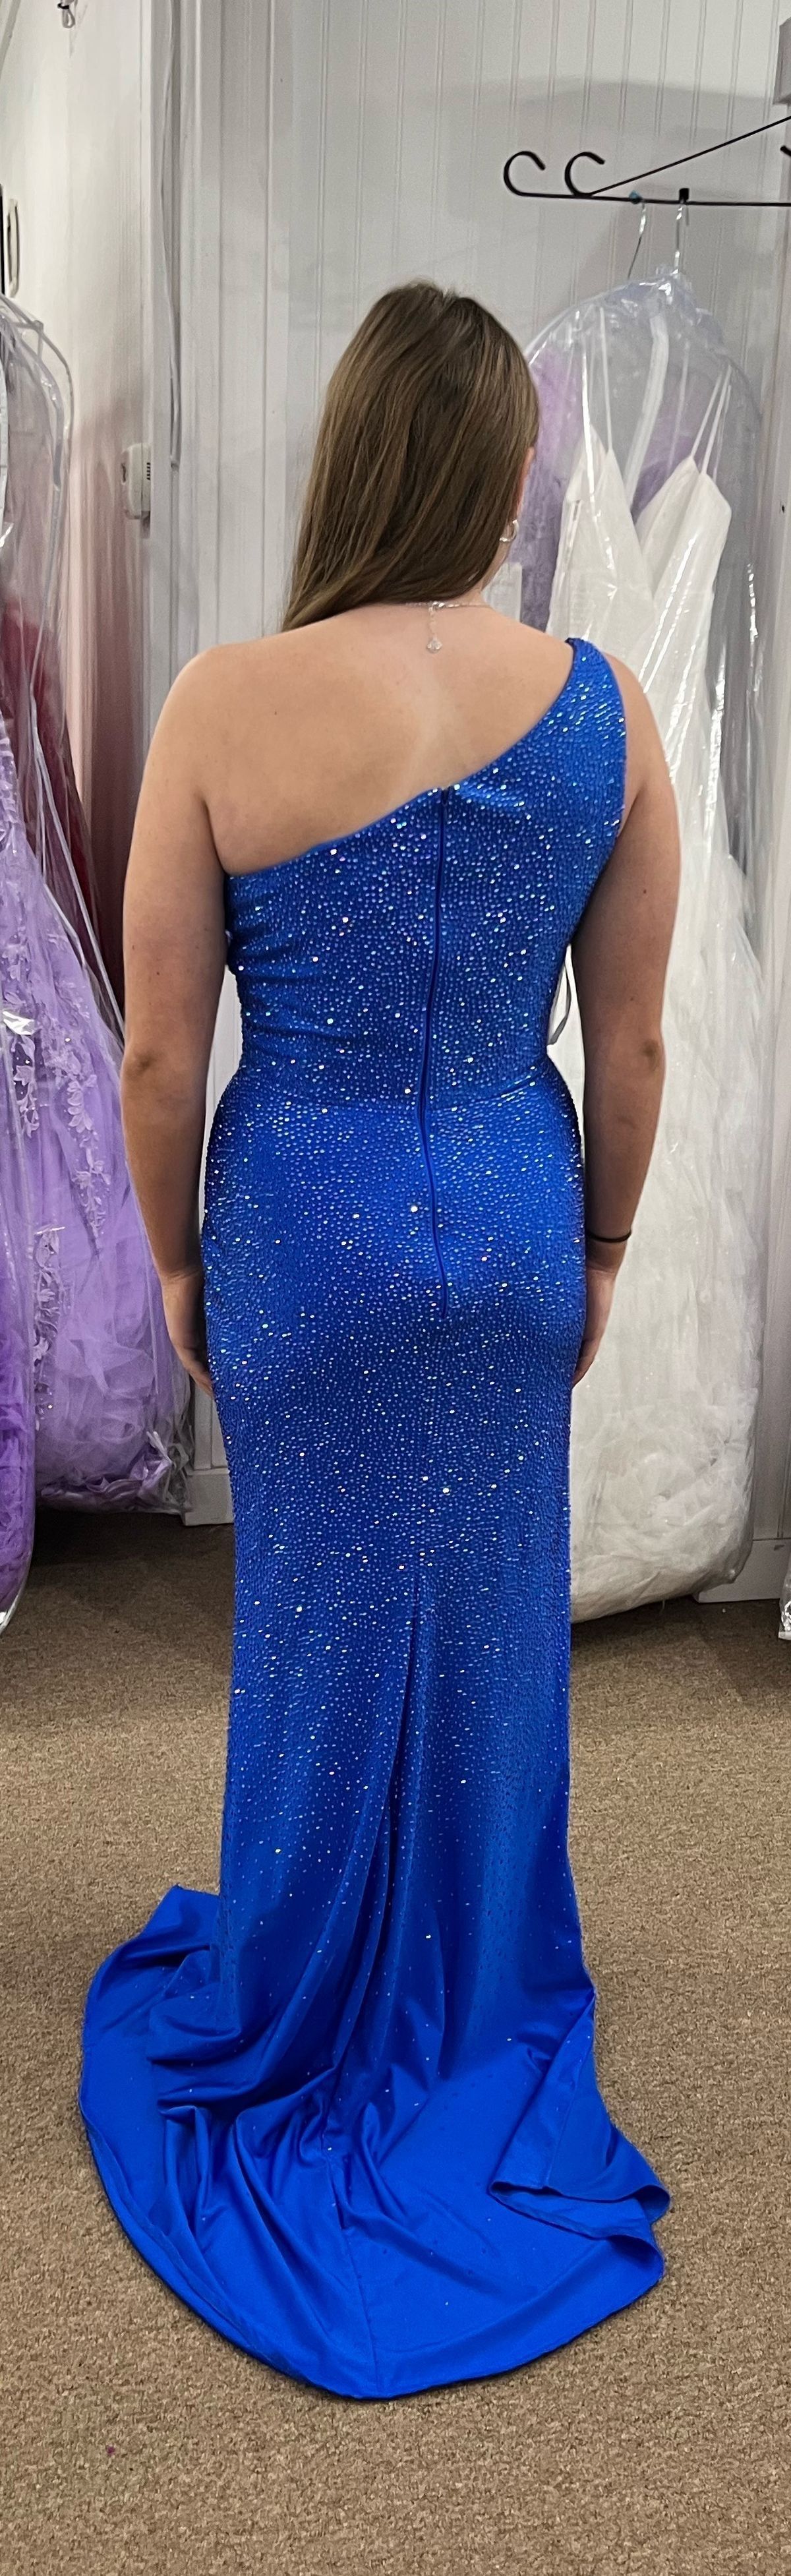 Sherri Hill Size 8 Prom One Shoulder Blue Side Slit Dress on Queenly